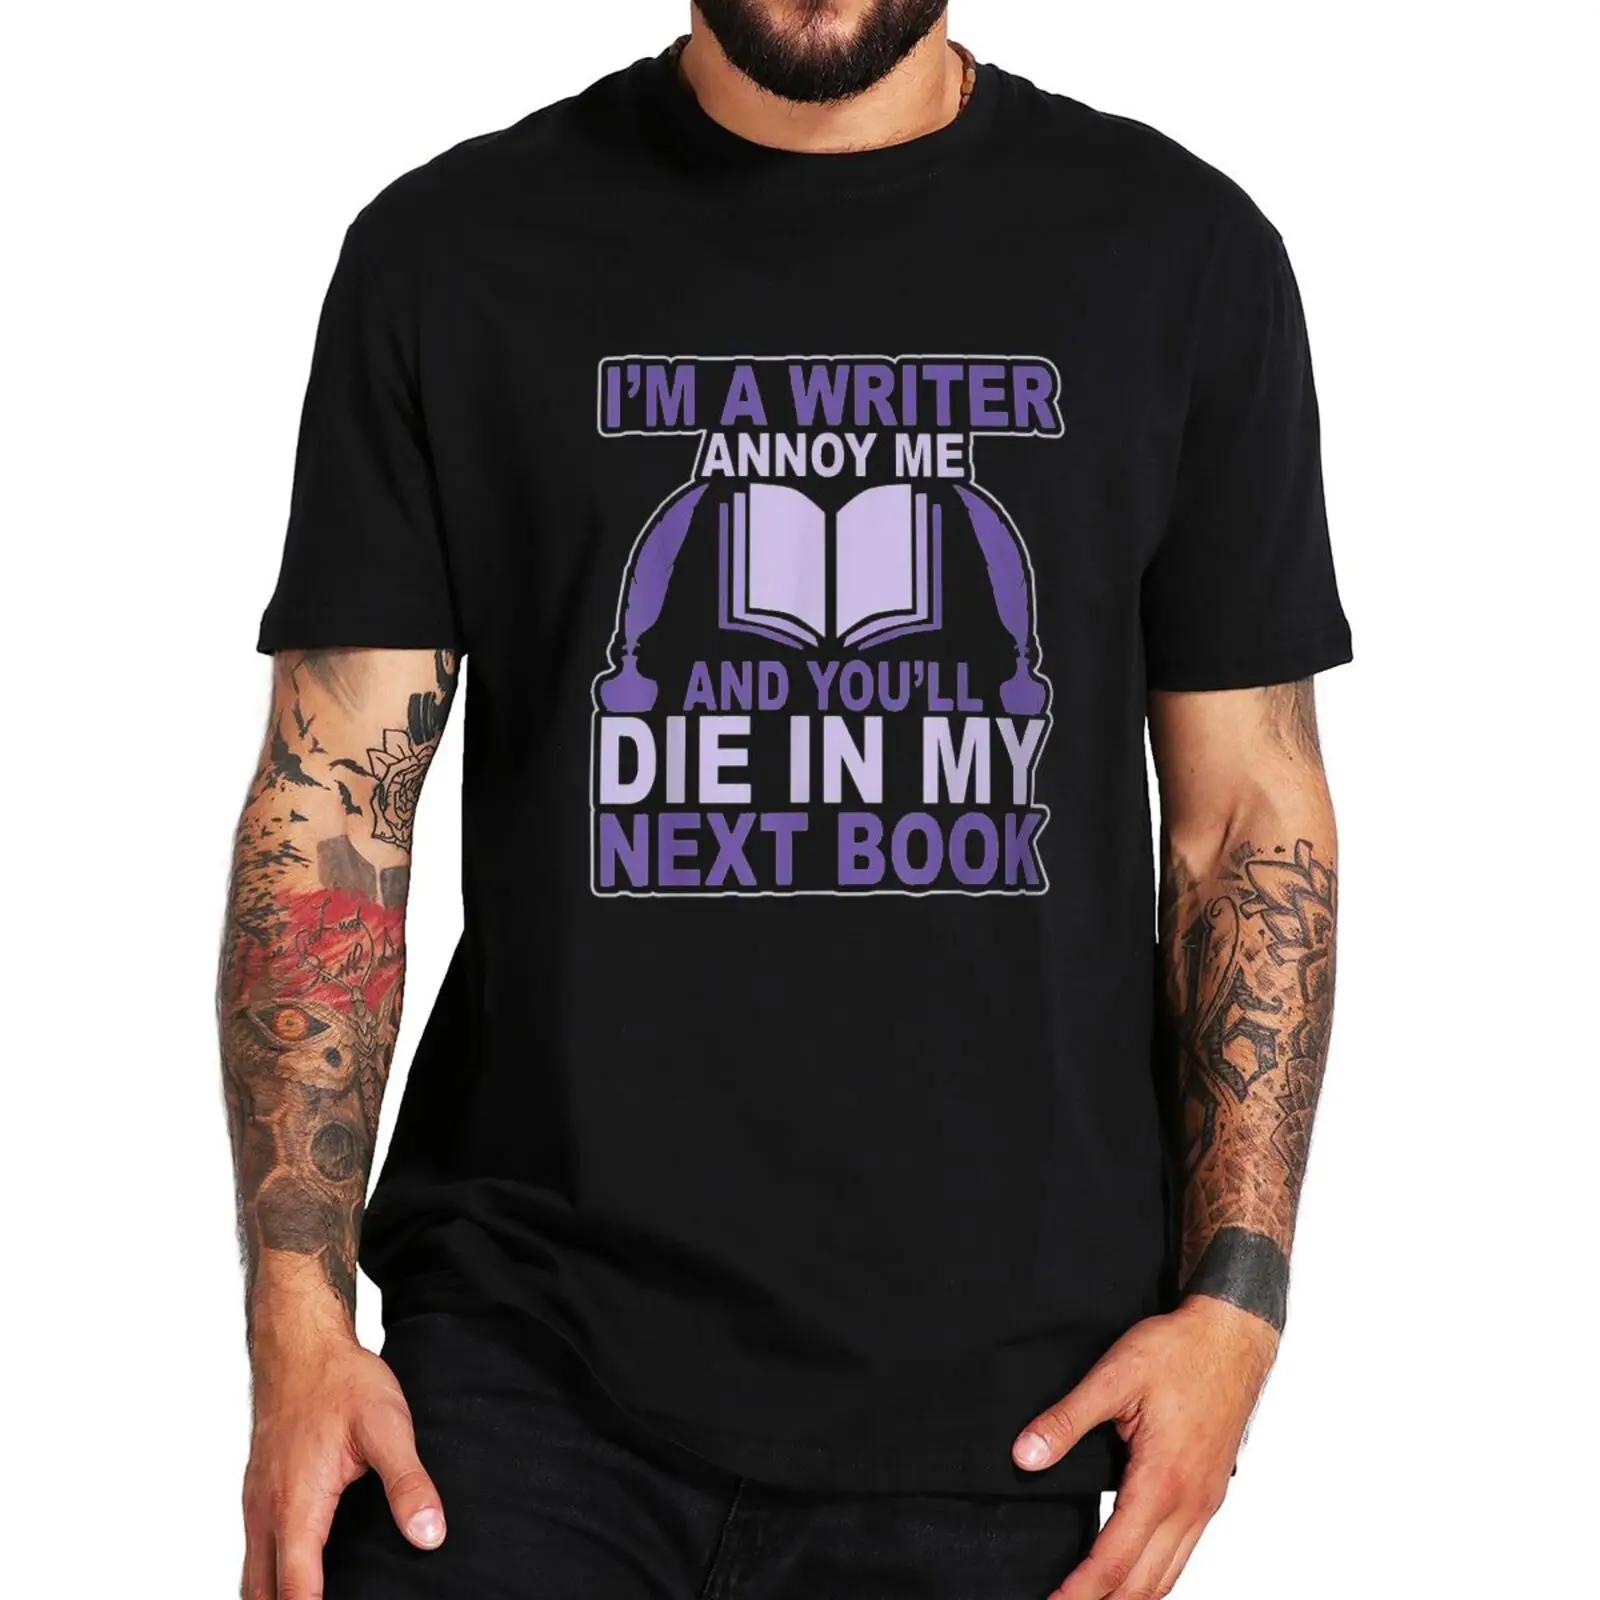 

Я писатель раздражаю меня, и вы умираете в следующей книге, футболка, смешные книжки, подарок, смешные футболки с юмором, повседневные хлопко...